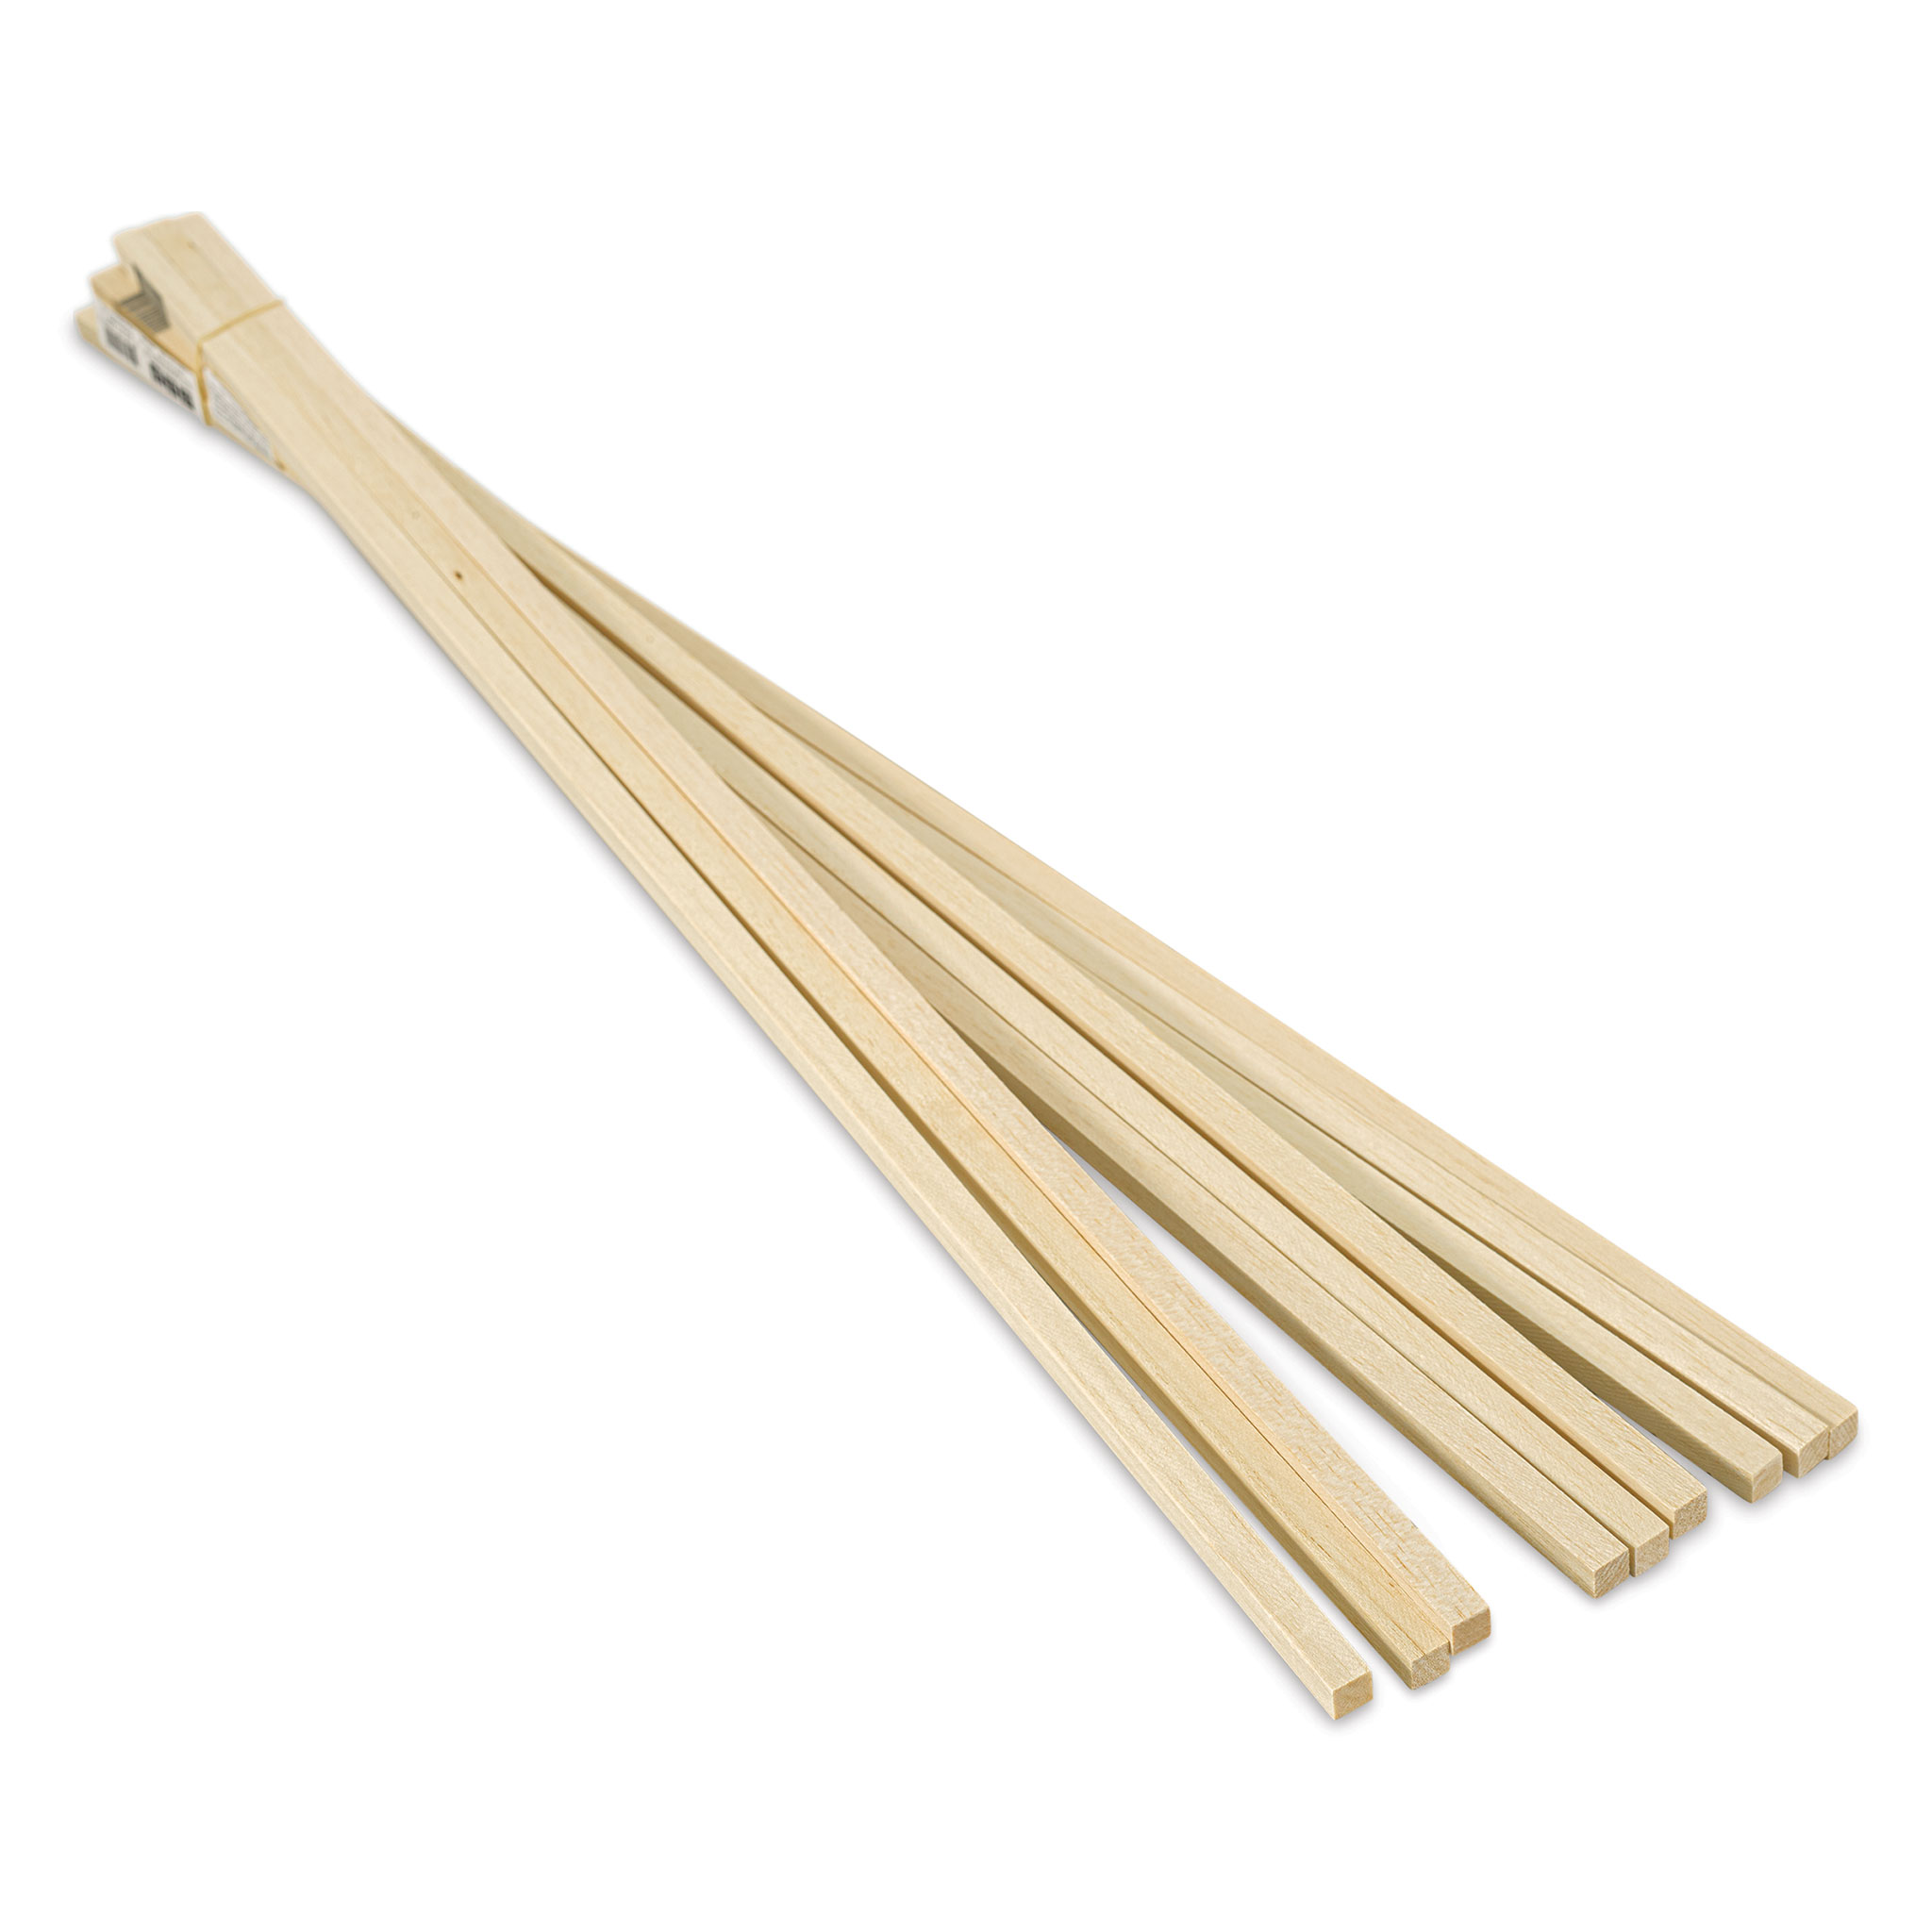 Bud Nosen Balsa Wood Sticks - 1/8 x 3/8 x 36, Pkg of 20